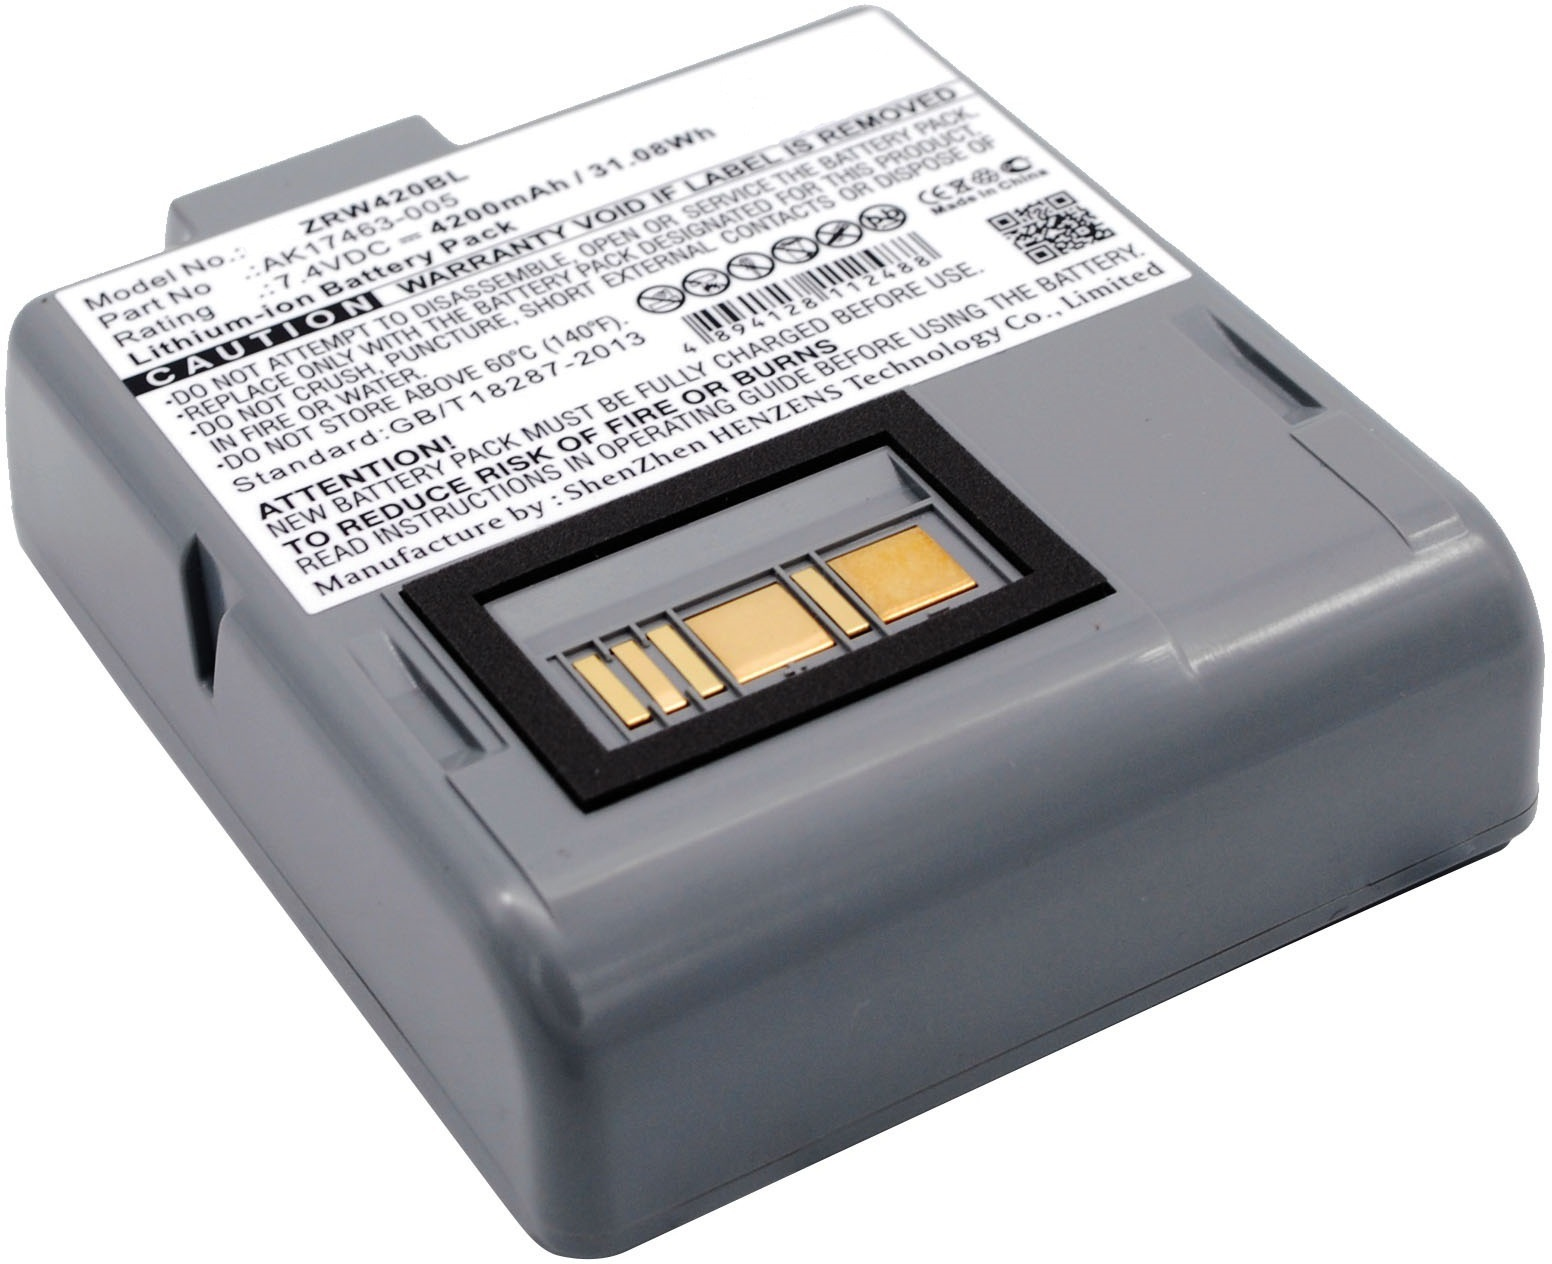 CoreParts MBXPR-BA045 printer/scanner spare part Battery 1 pc(s)